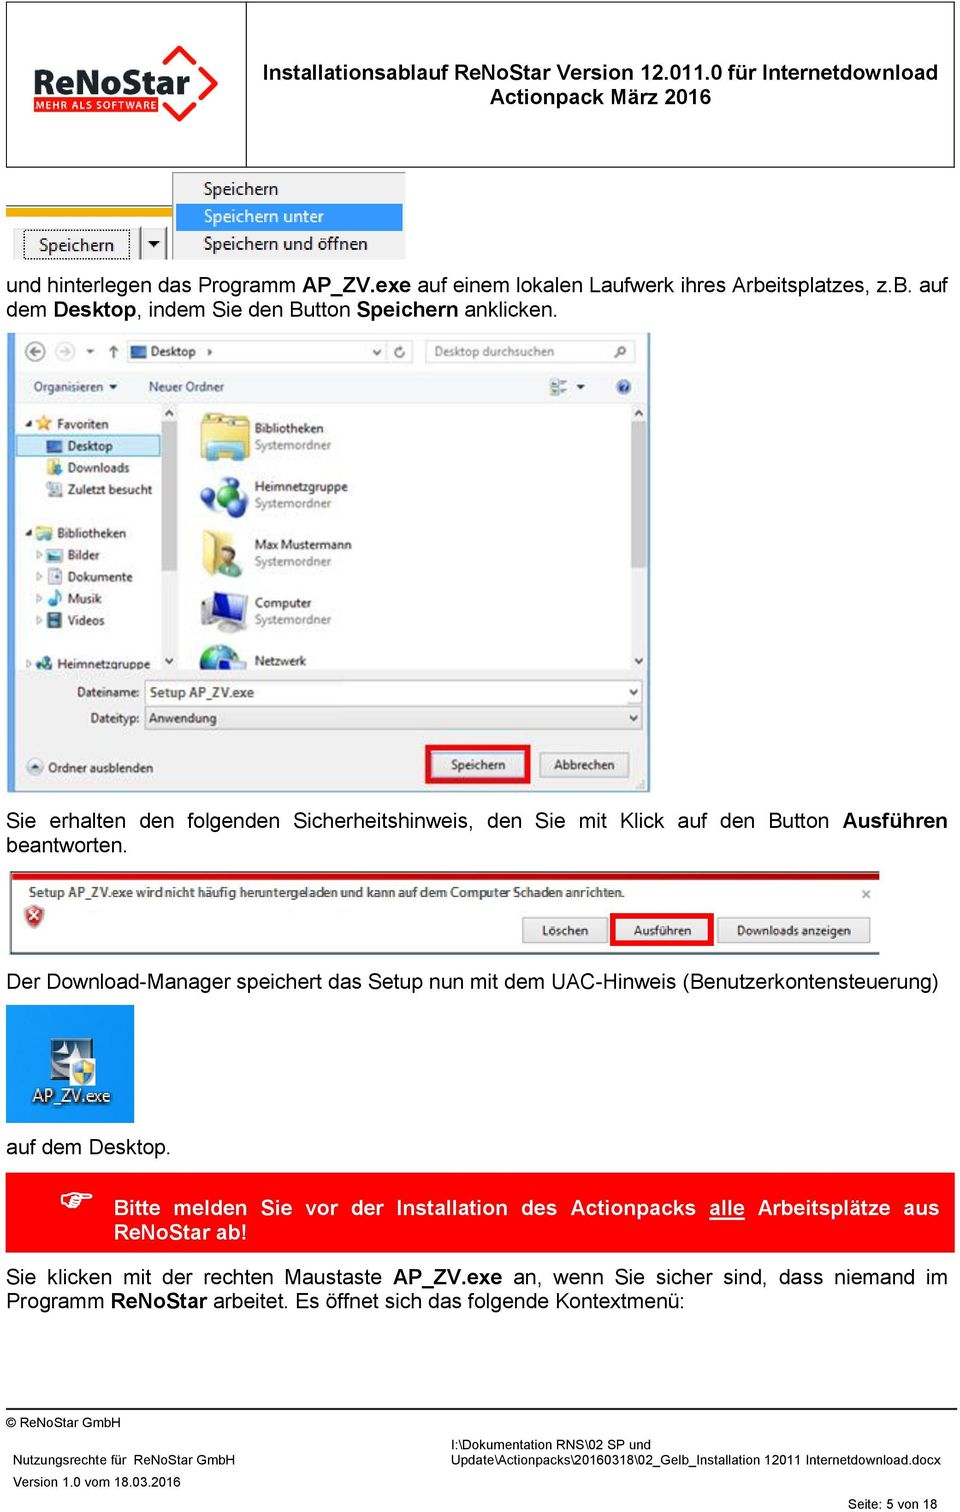 Der Download-Manager speichert das Setup nun mit dem UAC-Hinweis (Benutzerkontensteuerung) auf dem Desktop.